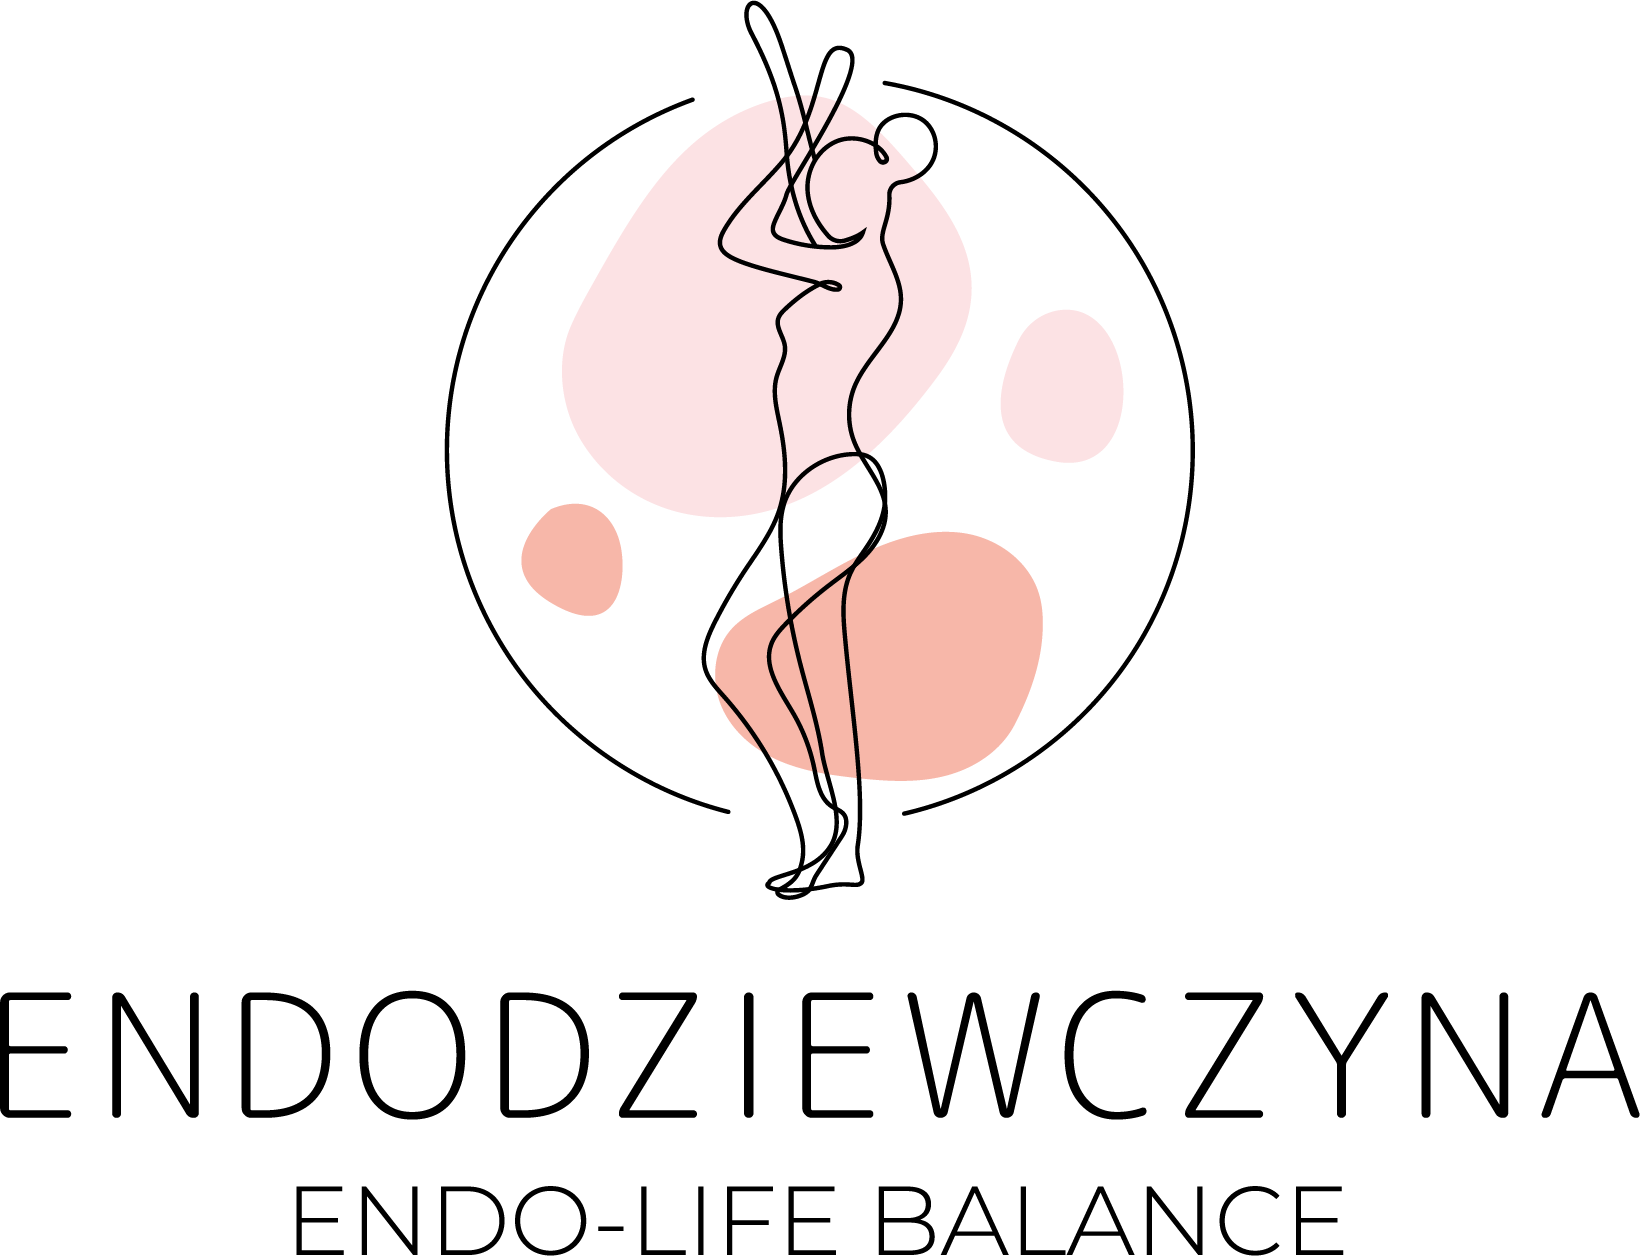 wyÅ›wietlaj zawsze po wyszukiwaniu sÅ‚Ã³w: "endometrioza blog", "blog o endometriozie", "blog endometrioza", "endo-life balance"